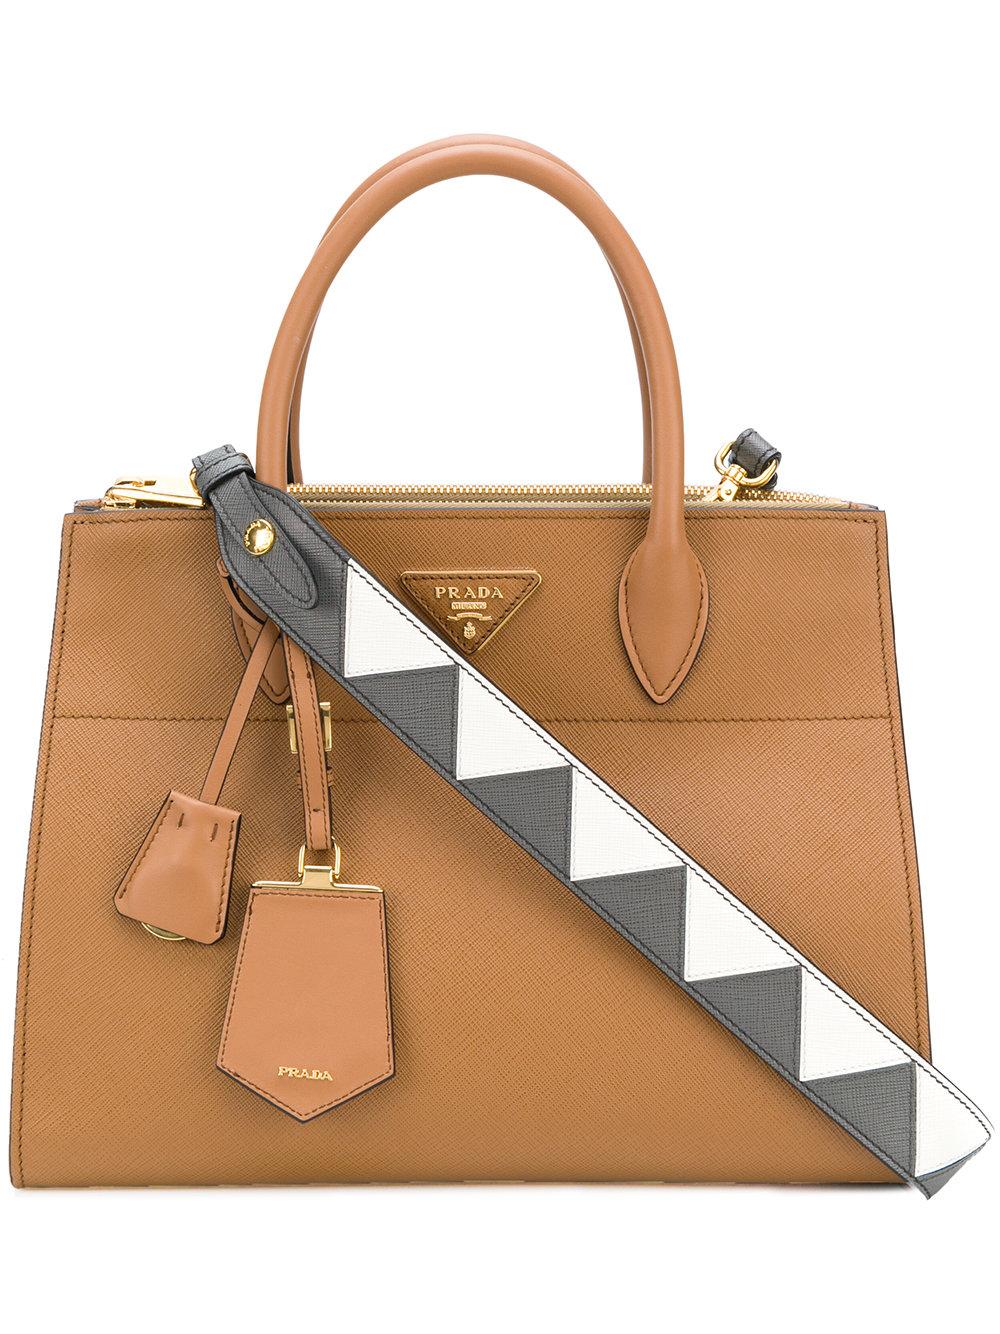 Sell Designer Handbags, Best Cash Offer